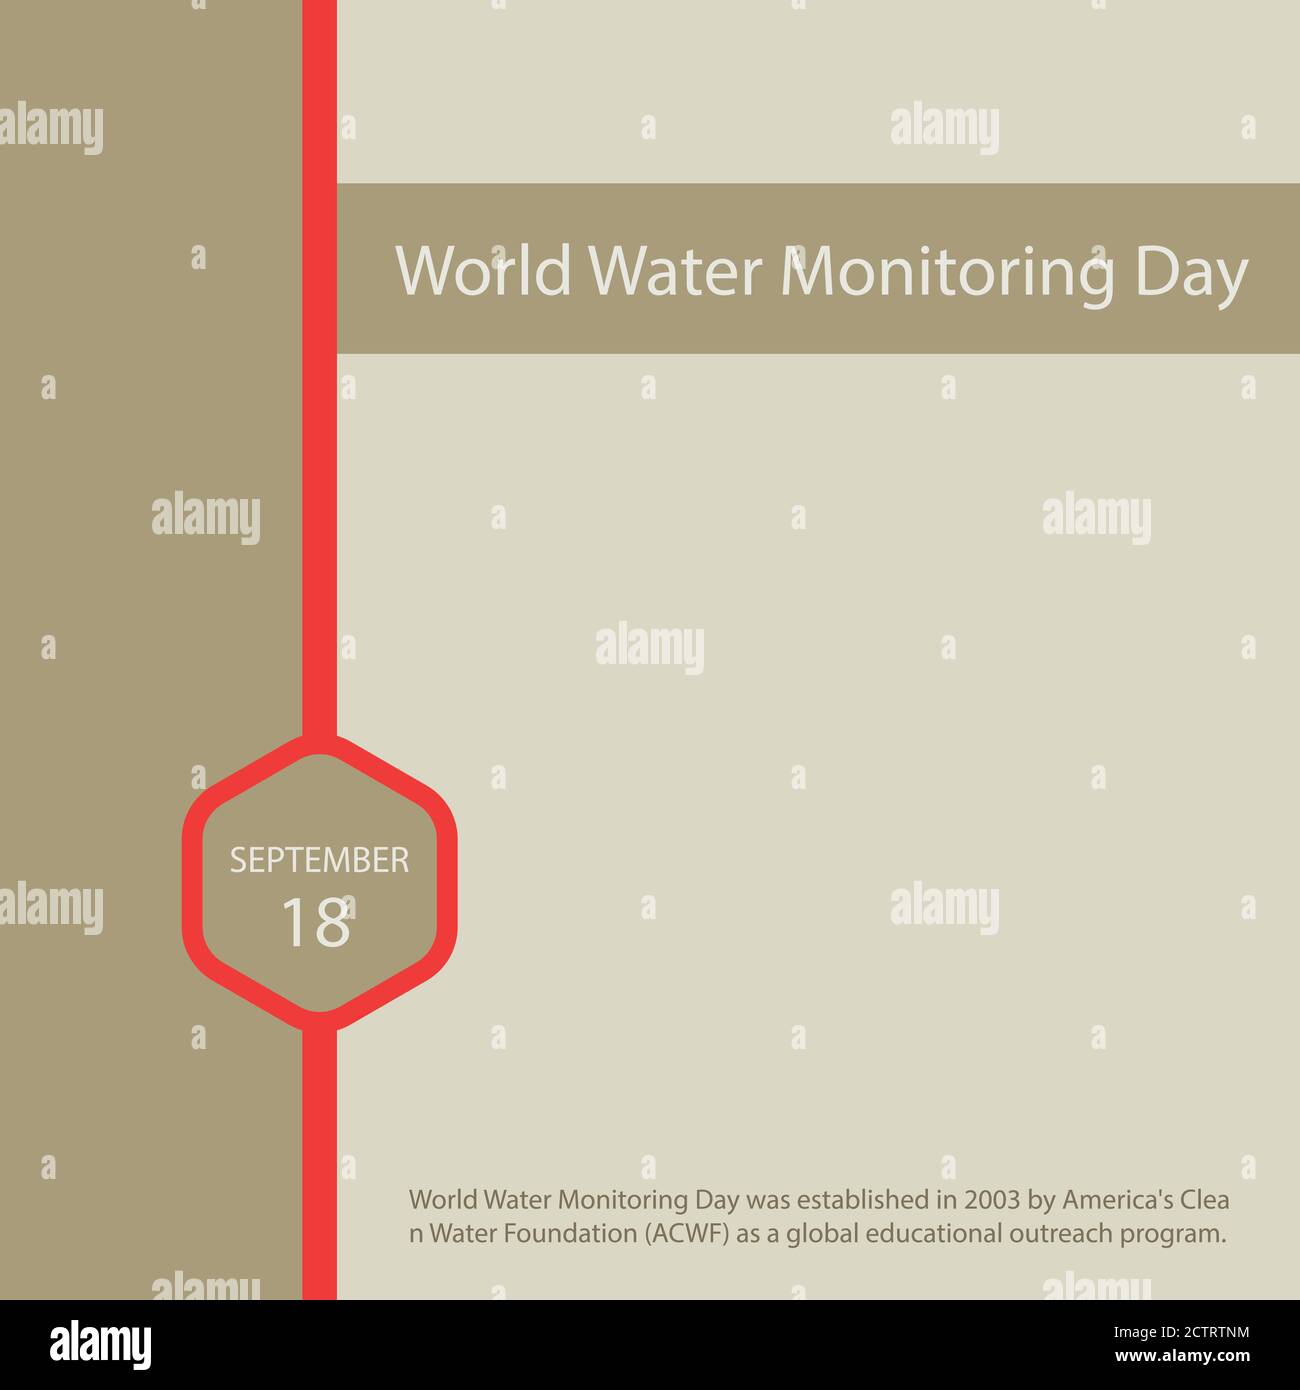 Der World Water Monitoring Day wurde 2003 von der amerikanischen Clean Water Foundation (ACWF) als globales Bildungsprogramm gegründet. Stock Vektor